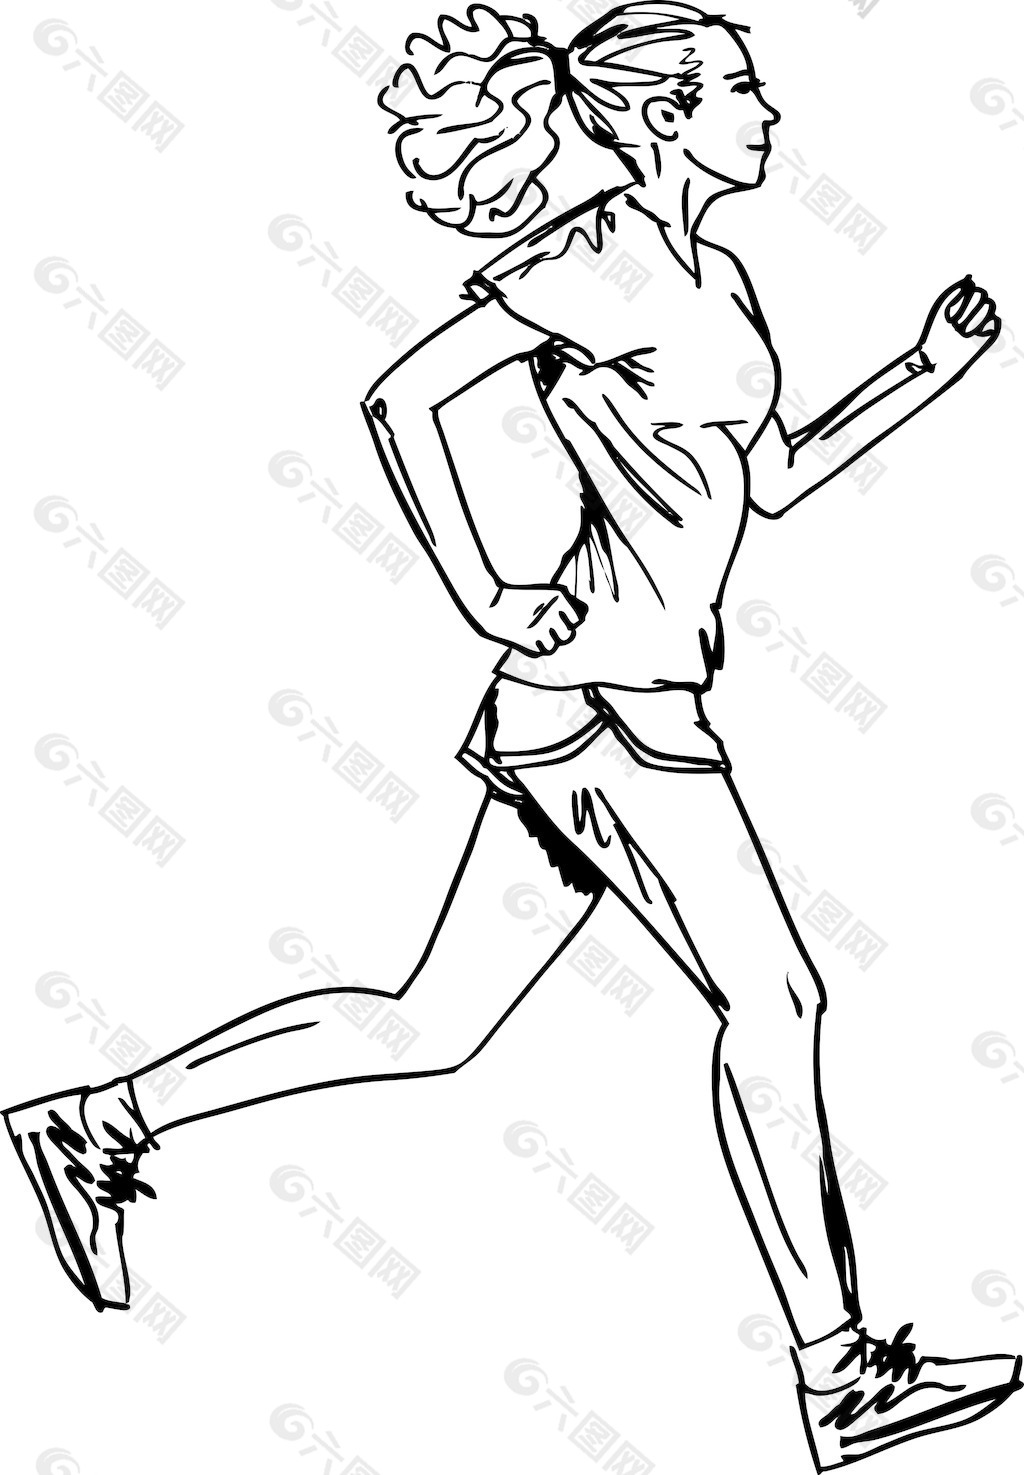 马拉松跑步简笔画图片